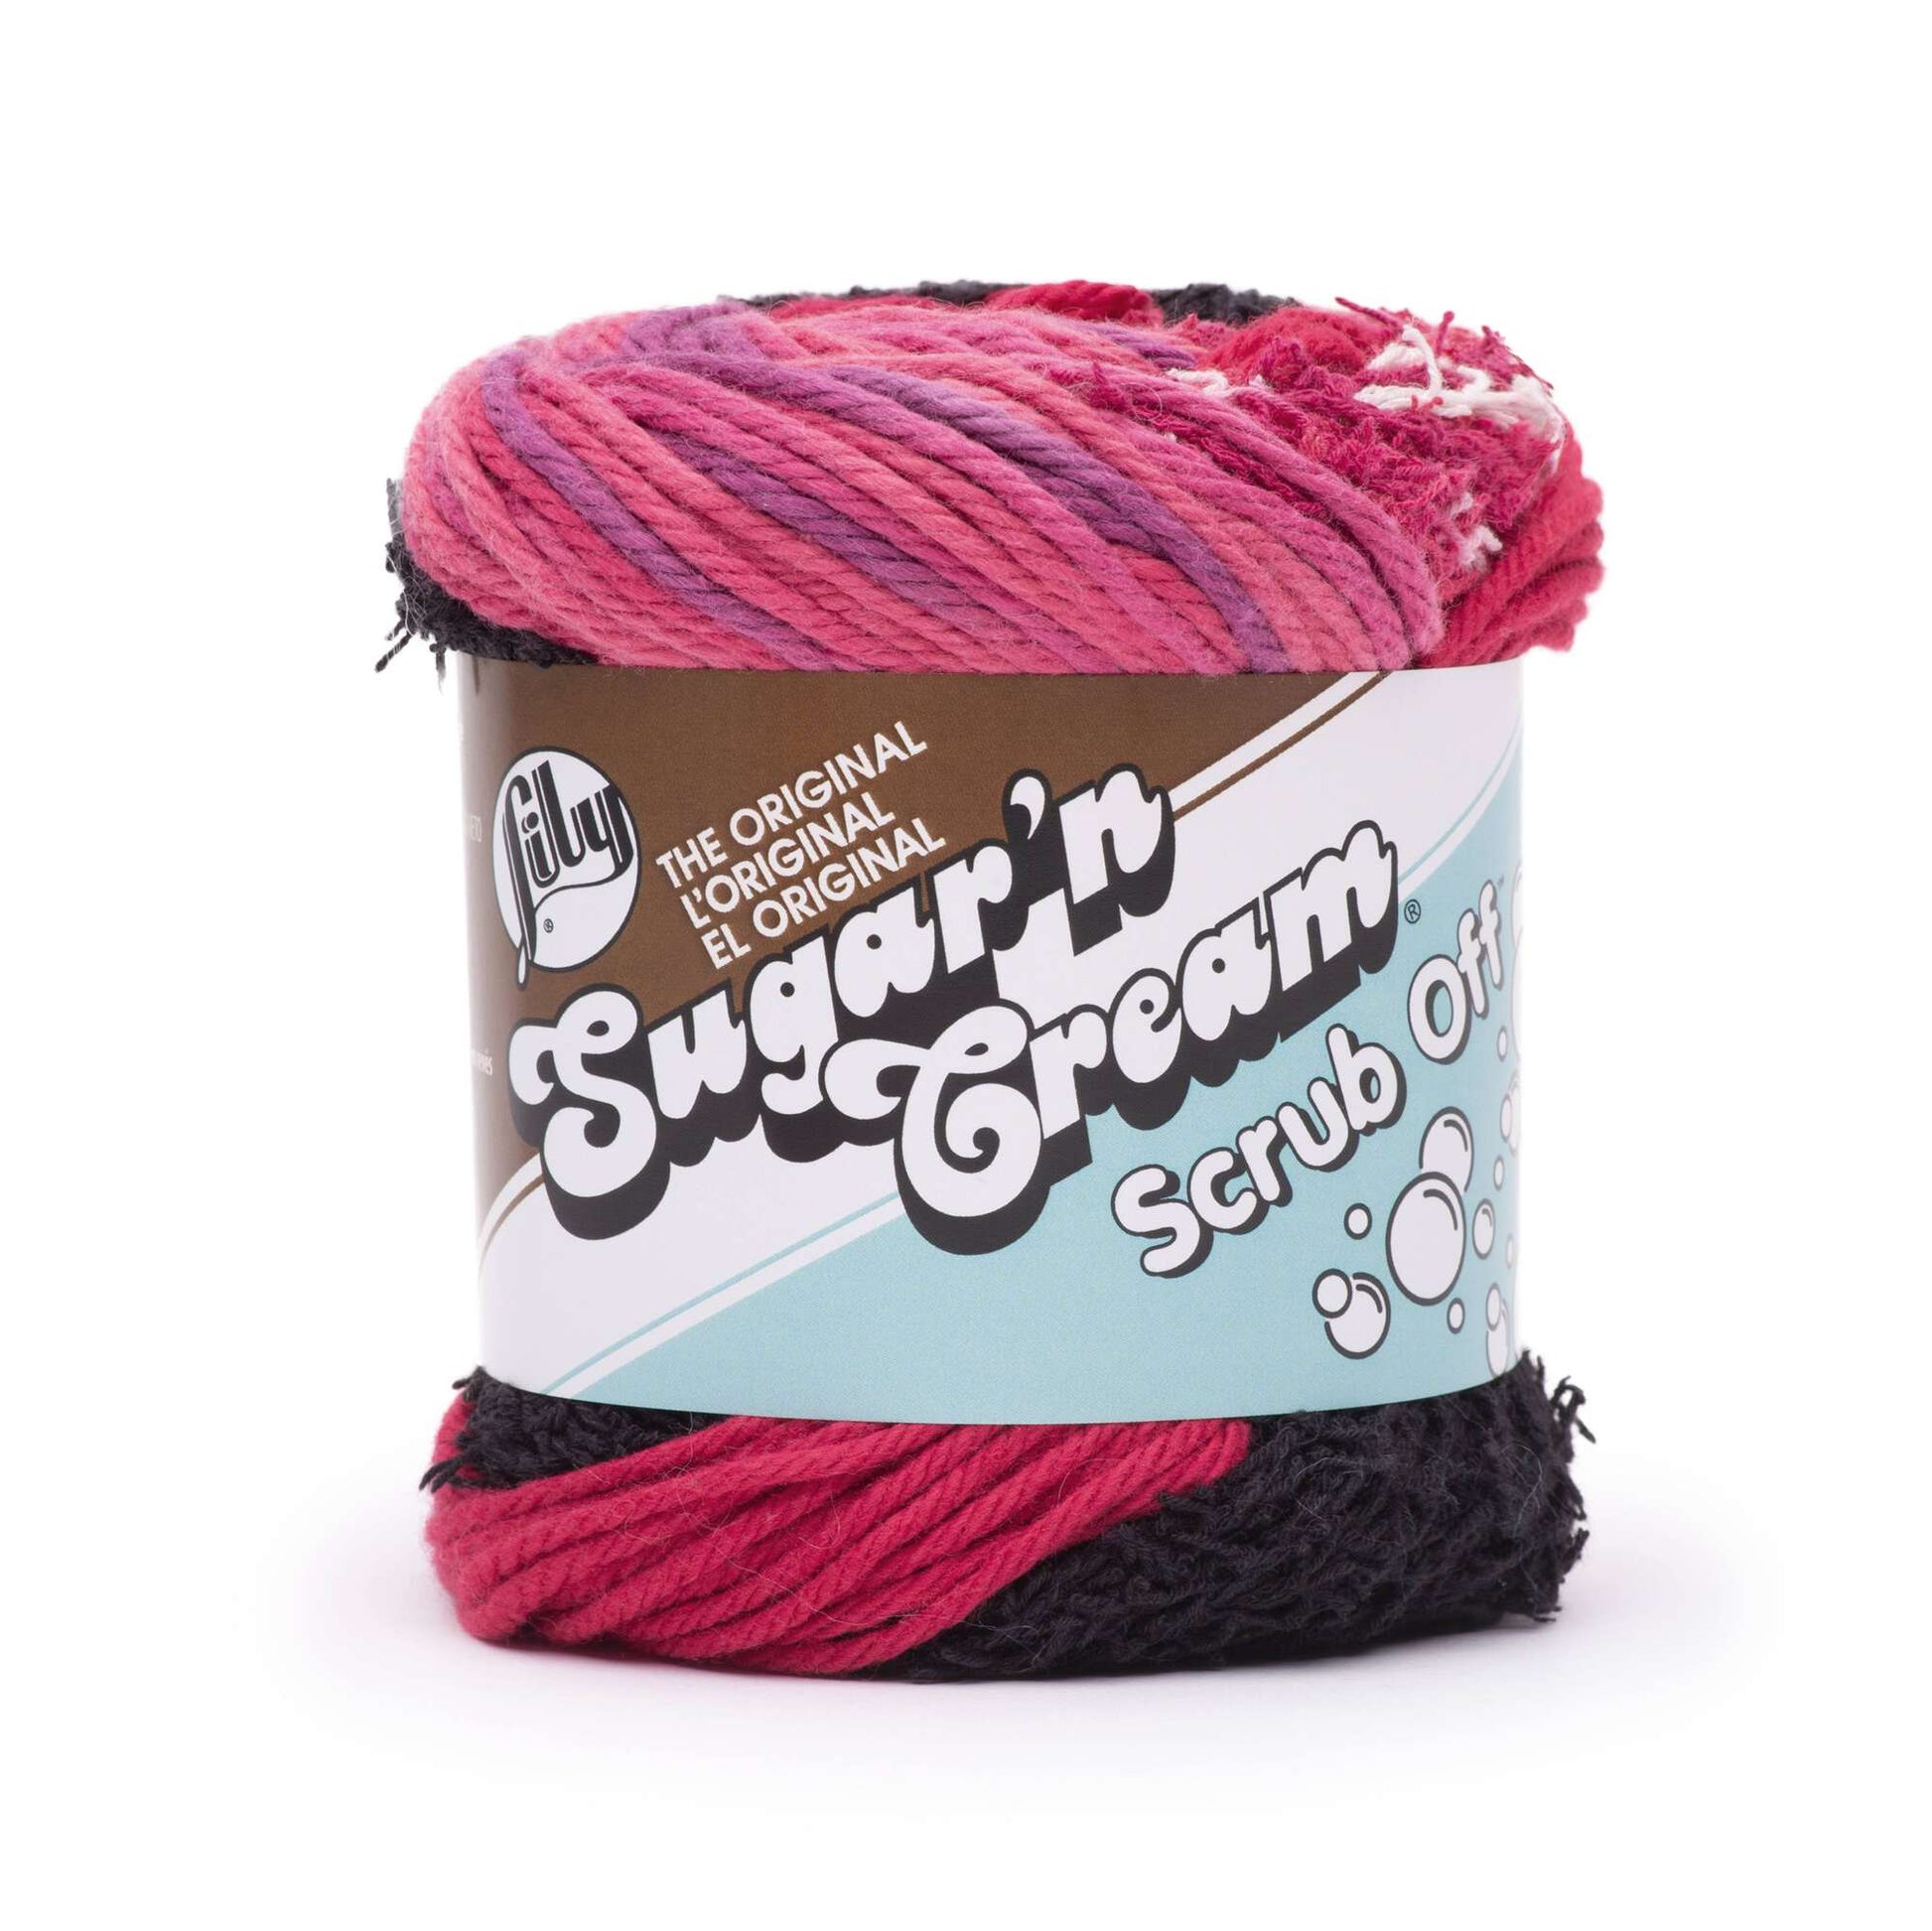 Lily Sugar'n Cream Scrub Off Yarn - Discontinued Shades Bowl Full of Jelly